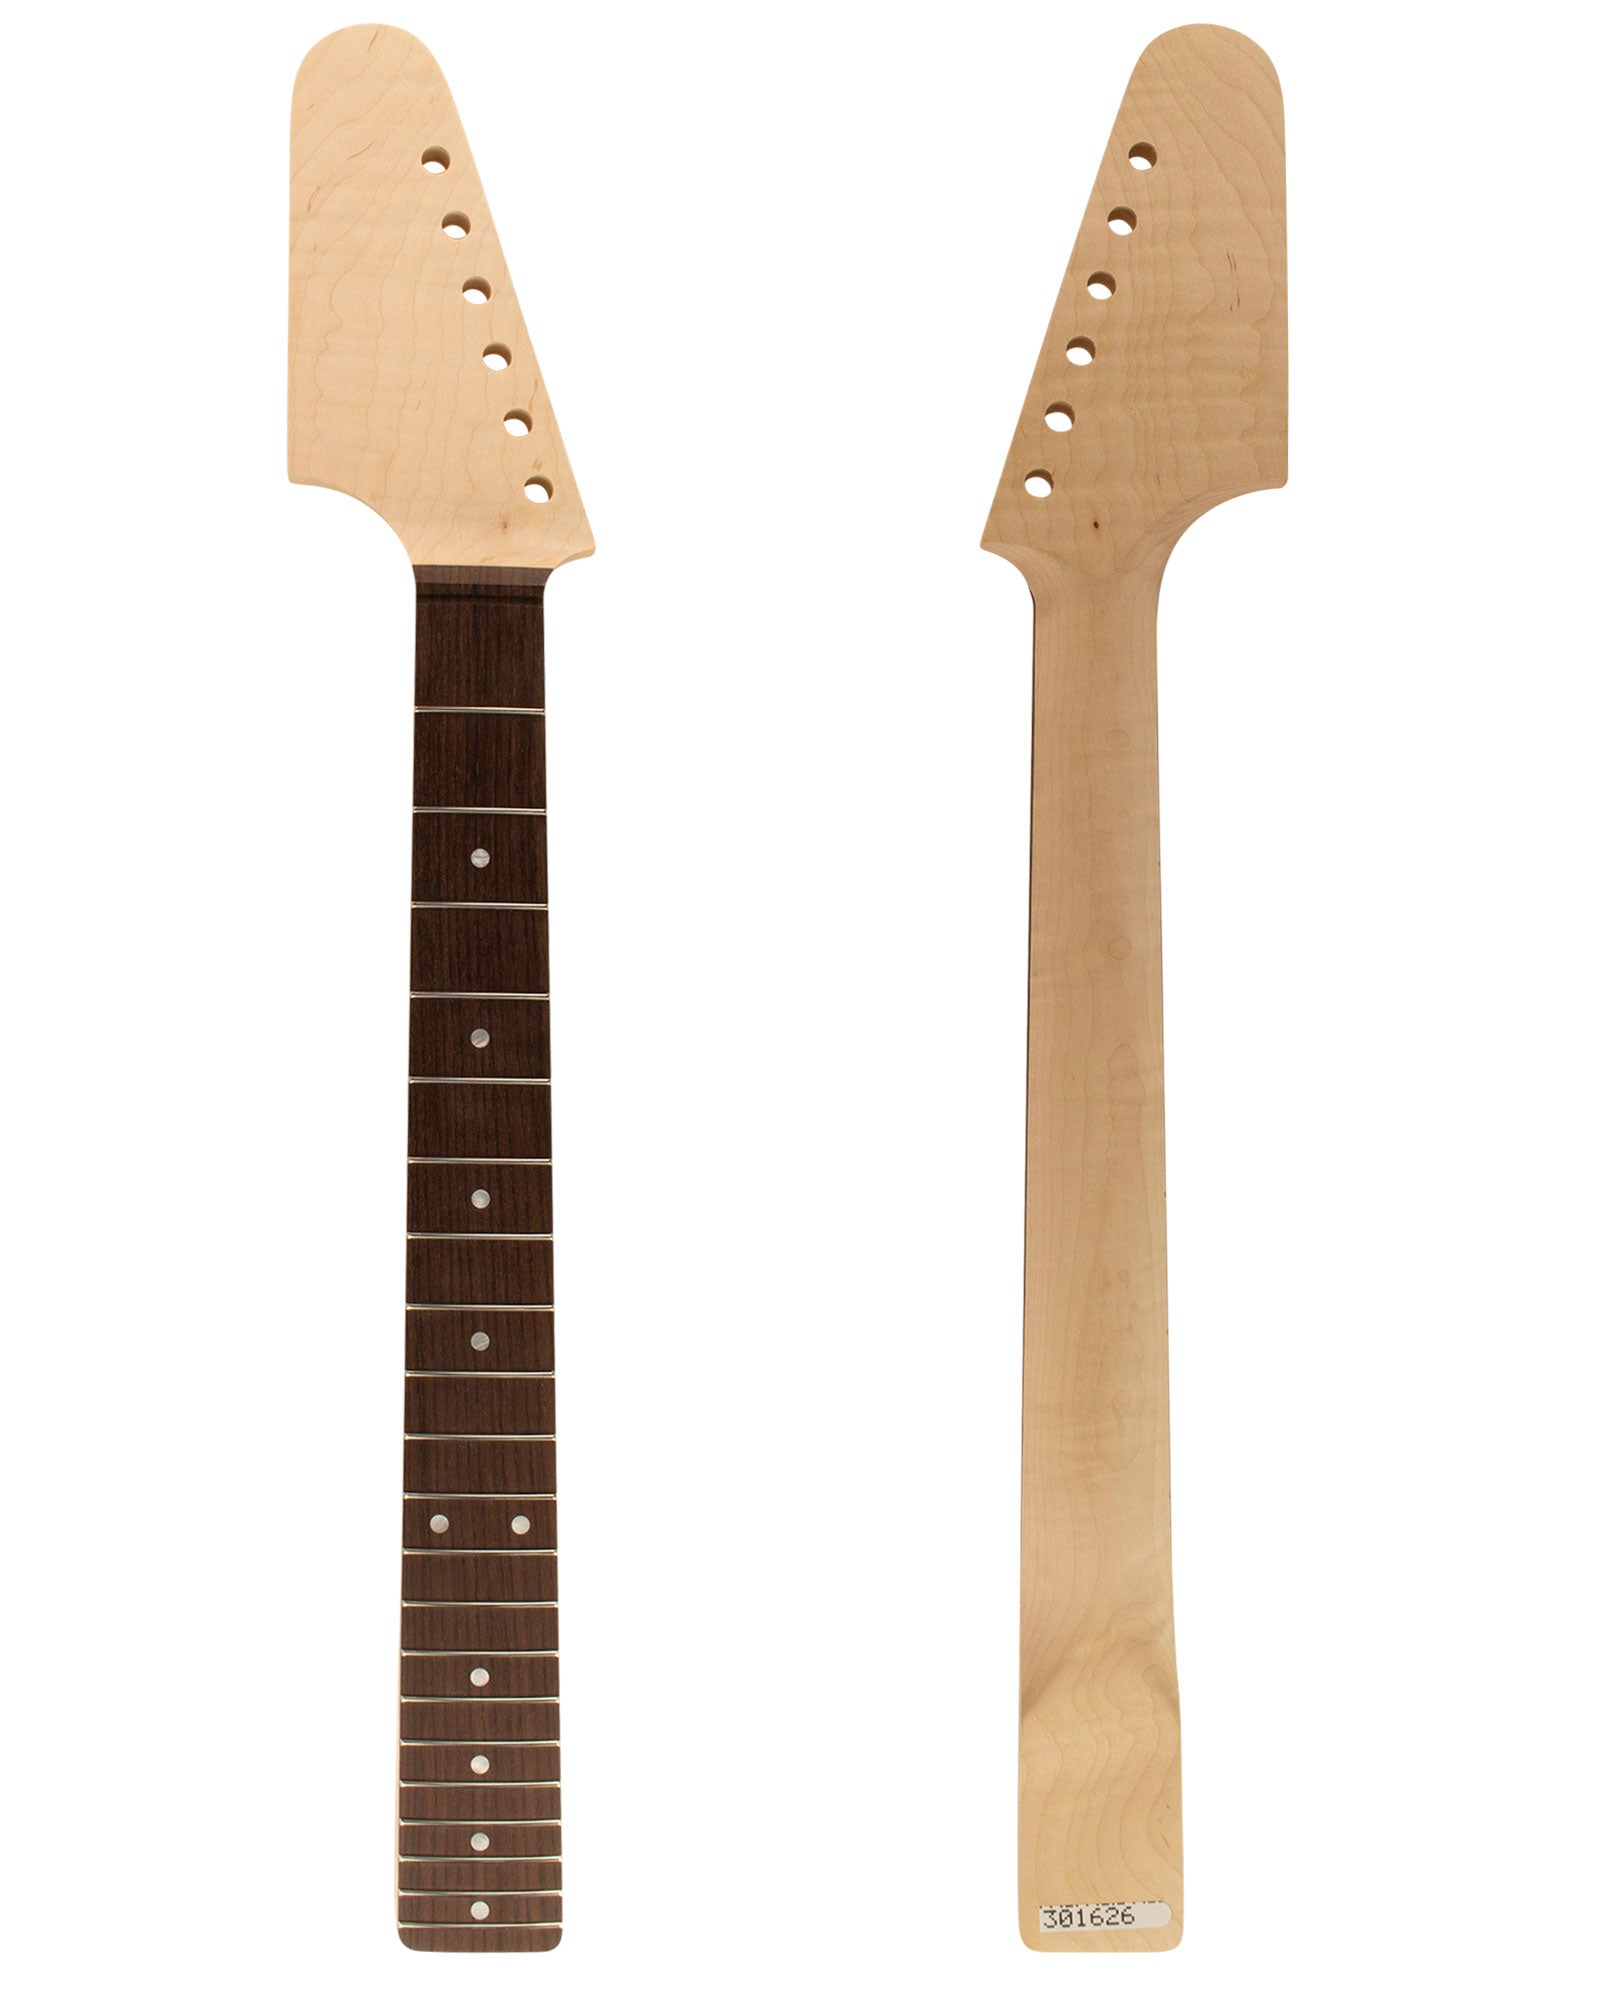 TC Guitar Neck 301626-Guitar Neck - In Stock-Guitarbuild